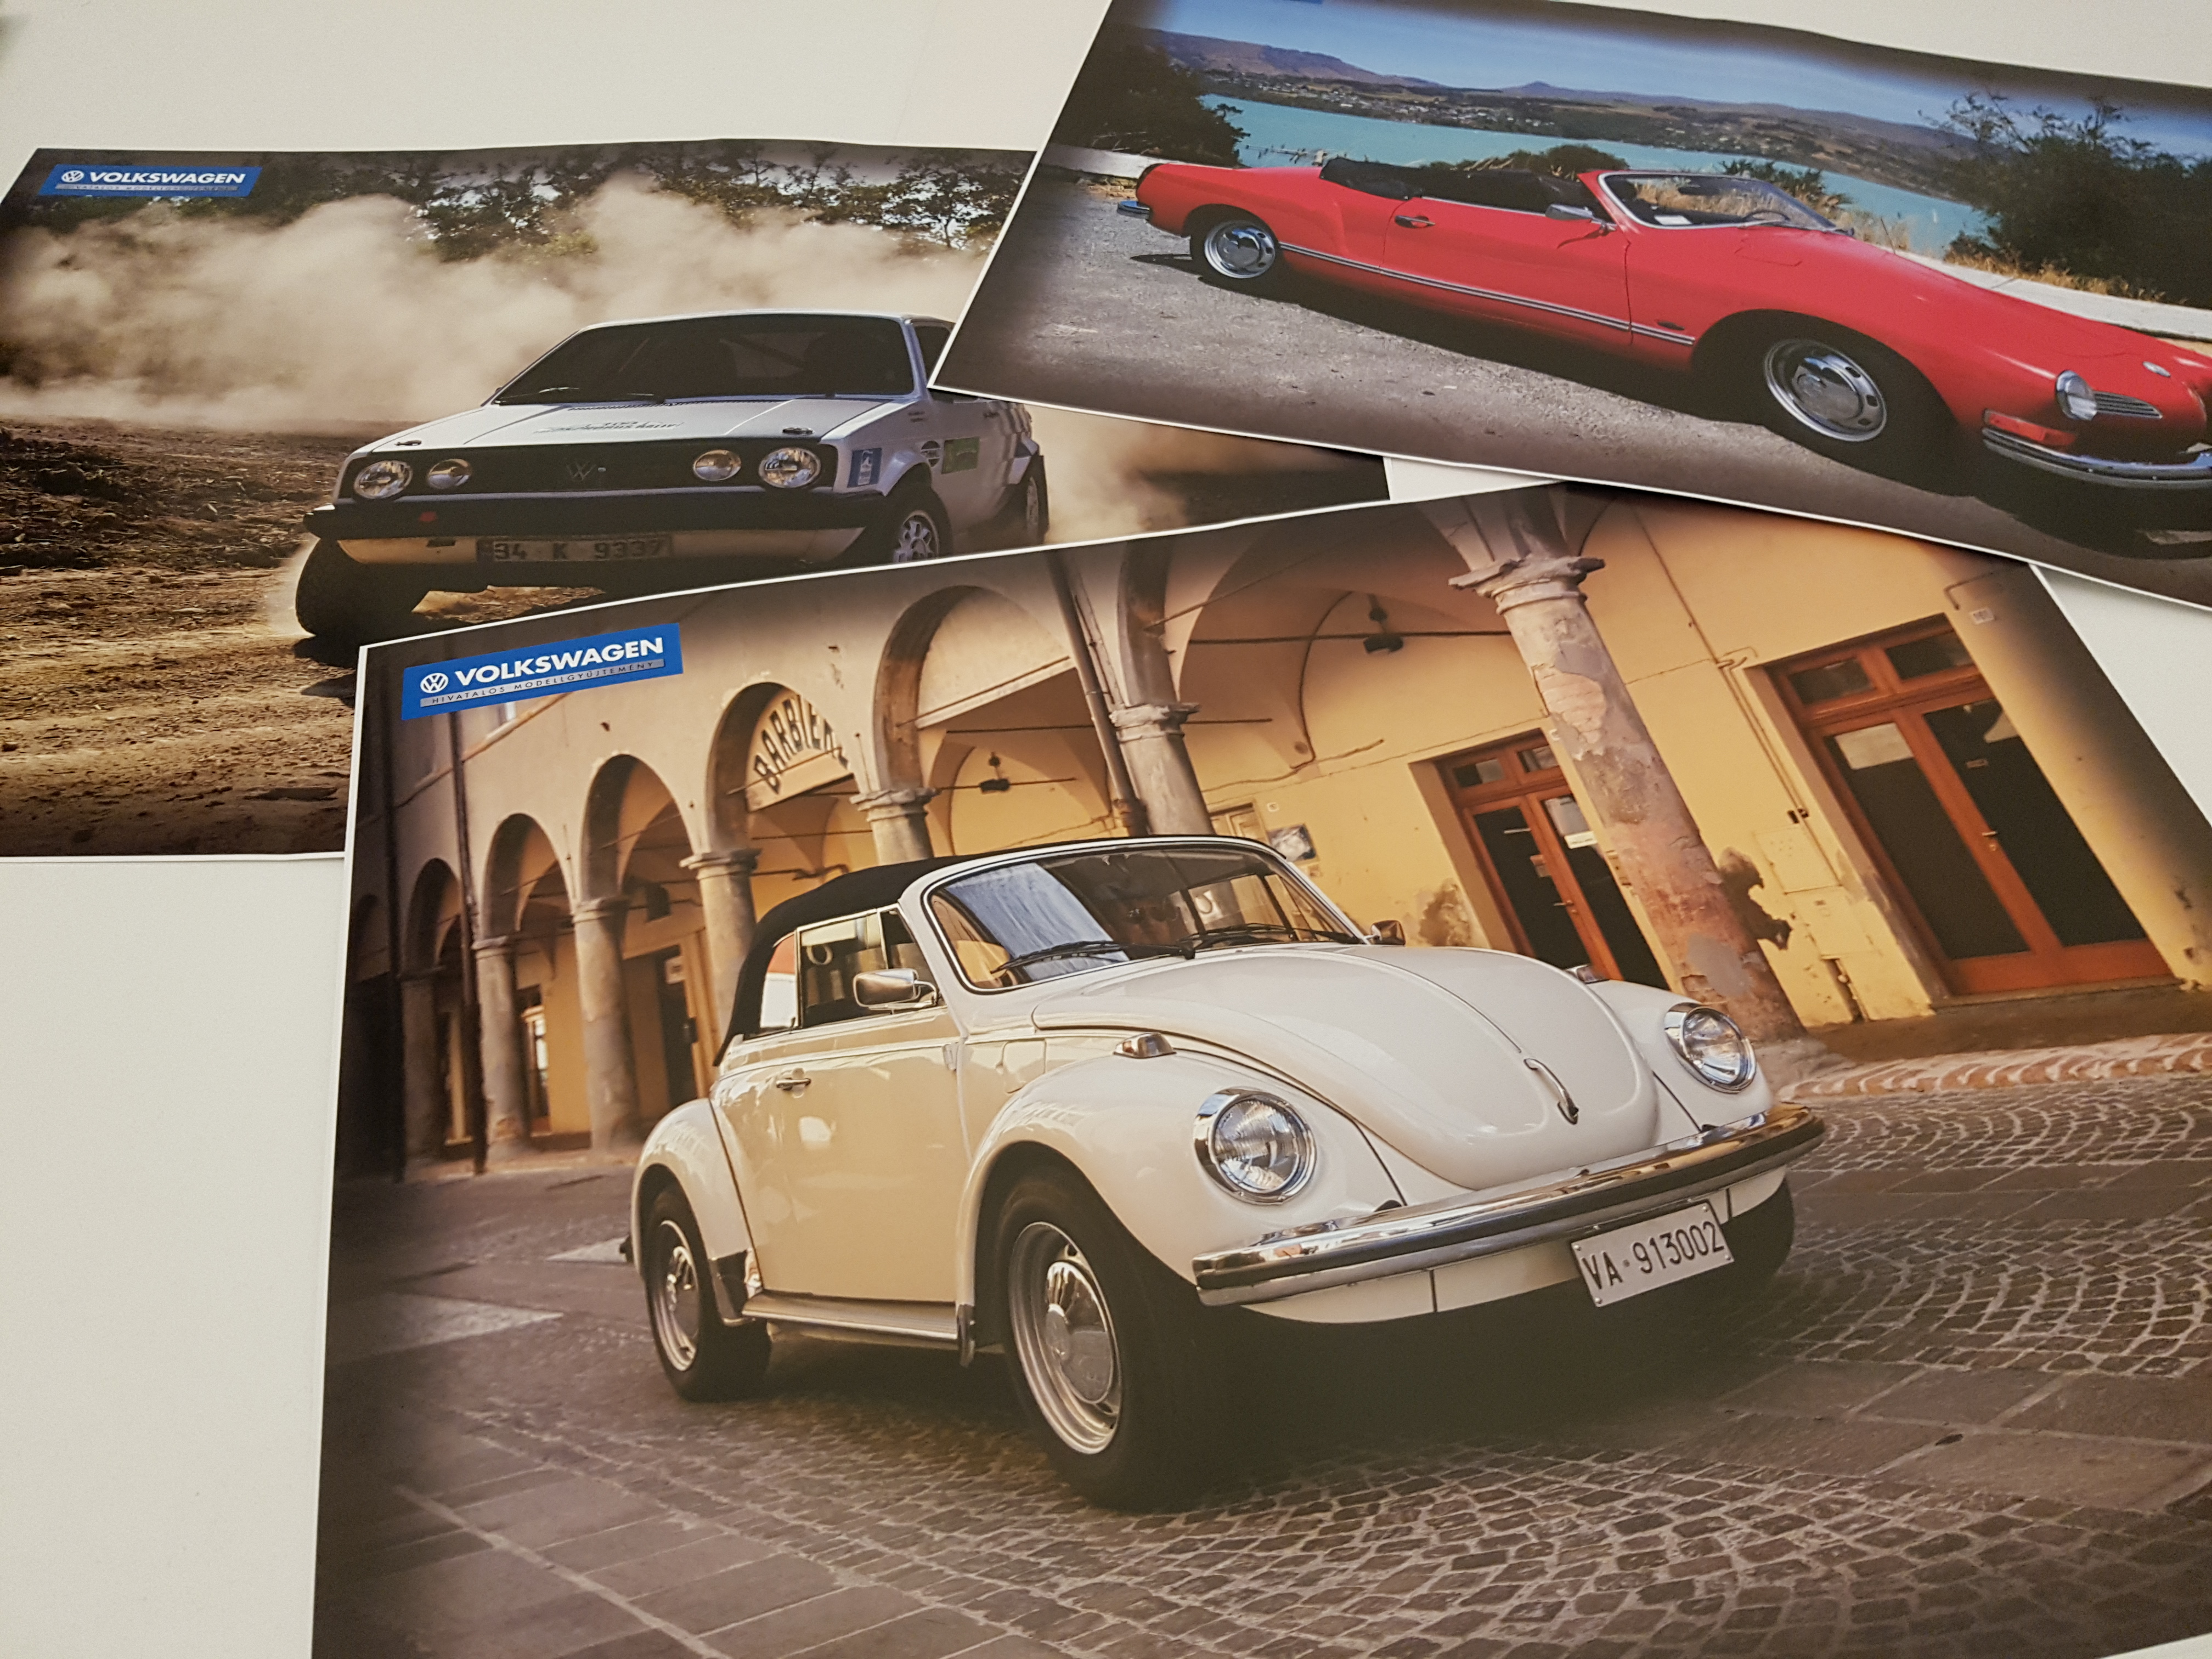 A gazdagon illusztrált lapszámok átfogó információkat nyújtanak a Volkswagen legendás típusairól, a gyártásuk korszakát felidéző életérzésről, valamint a Volkswagen vállalatóriás érdekes történetéről.